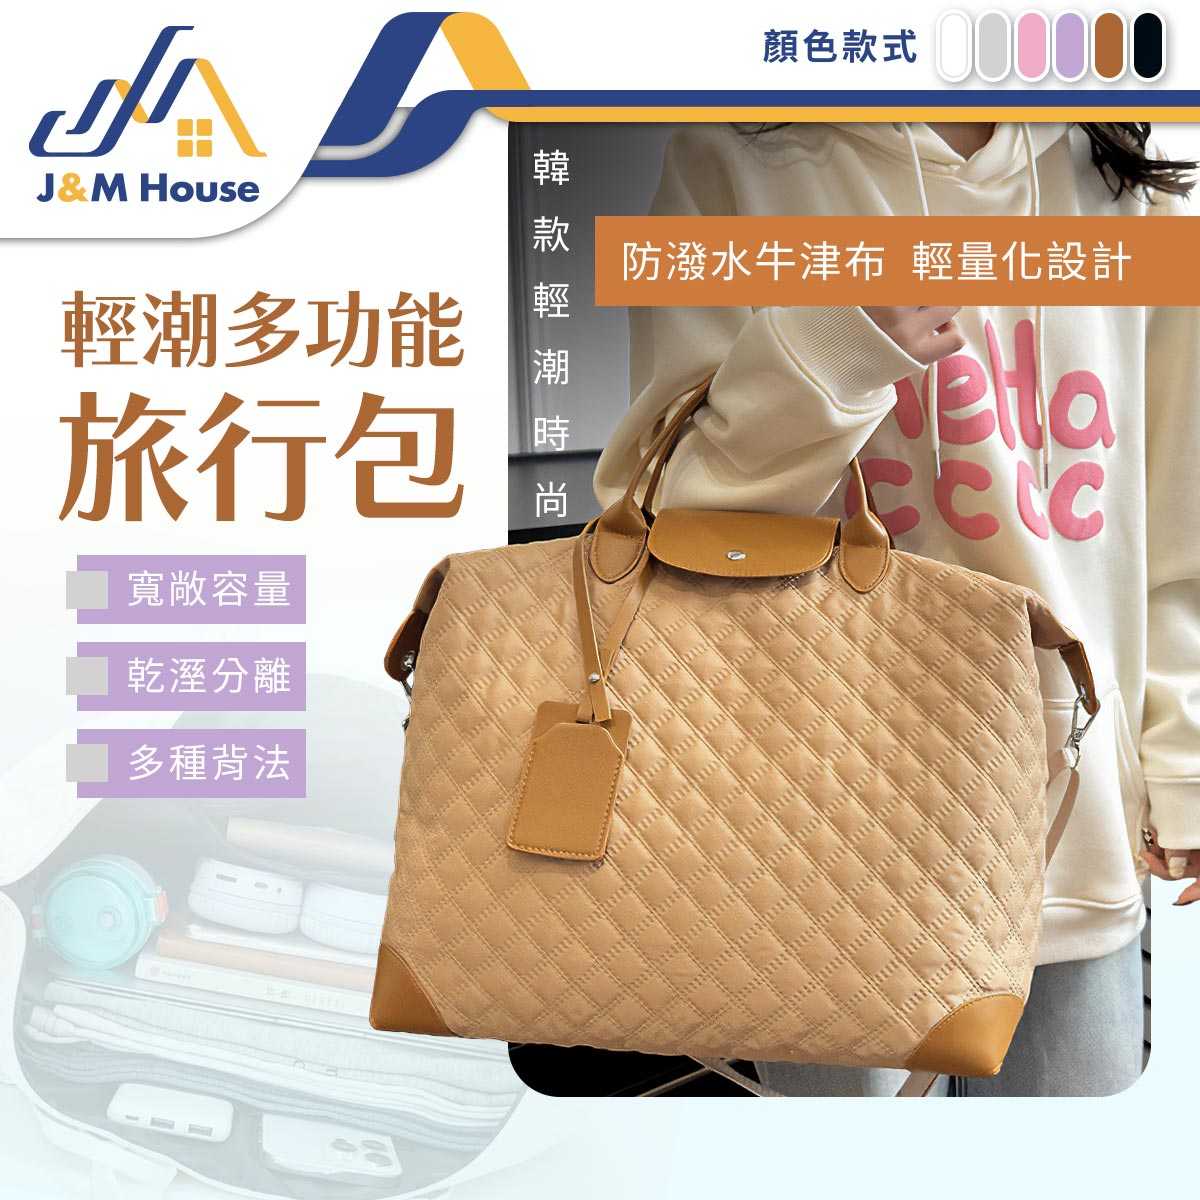 大容量旅行包 多功能旅行袋 菱格紋行李包 手提包 健身包 行李袋 手提行李袋